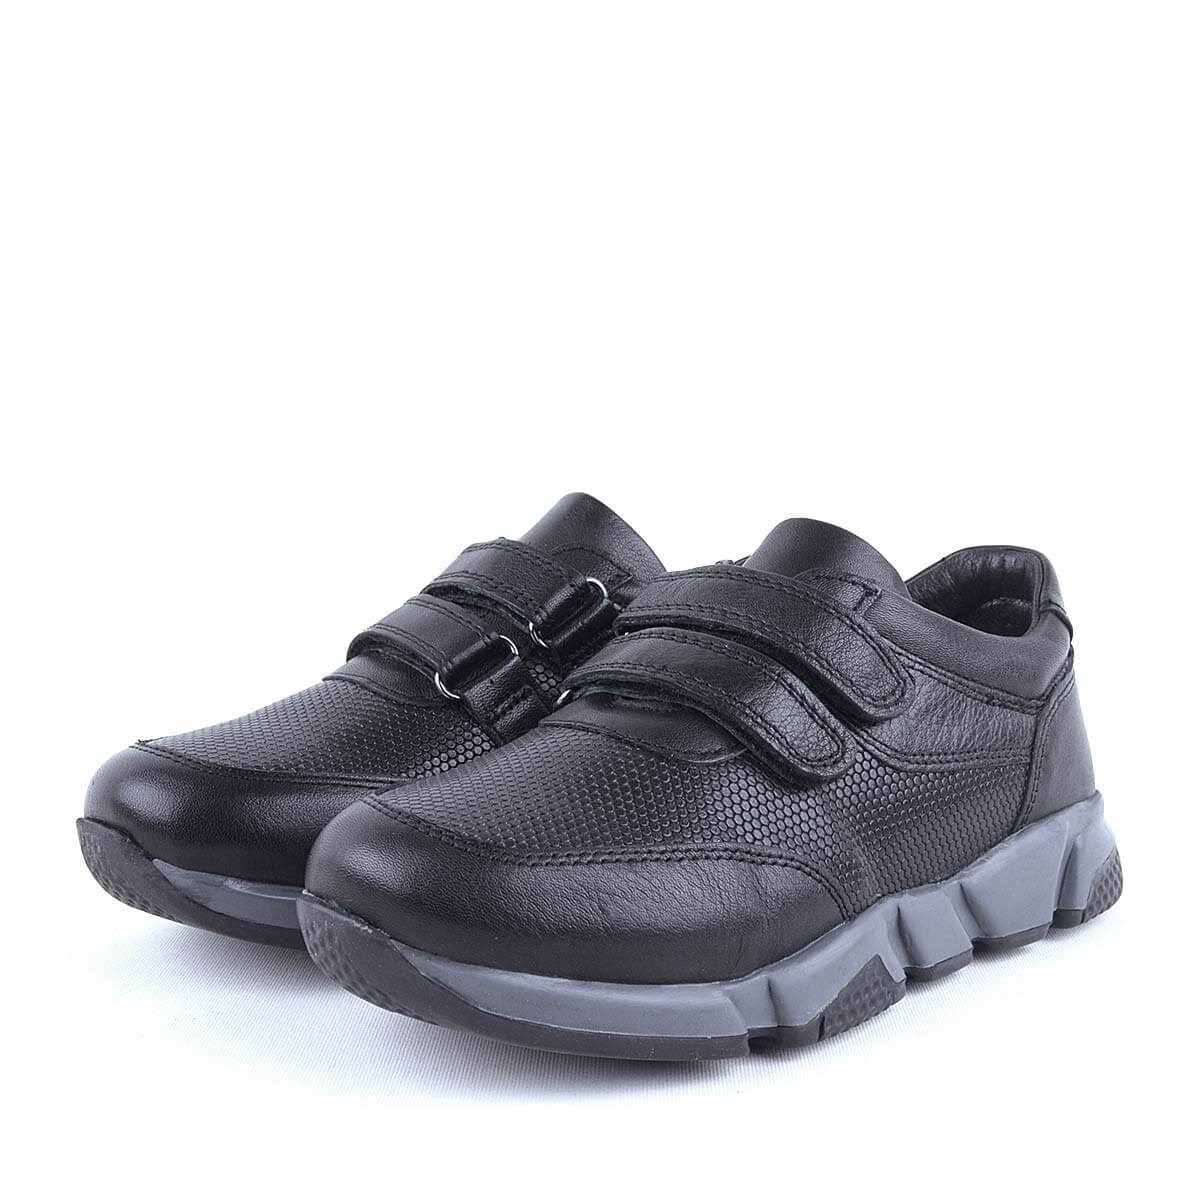 Hakiki Deri Siyah Cırtlı Unisex Çocuk Spor Okul Ayakkabısı - C506-S